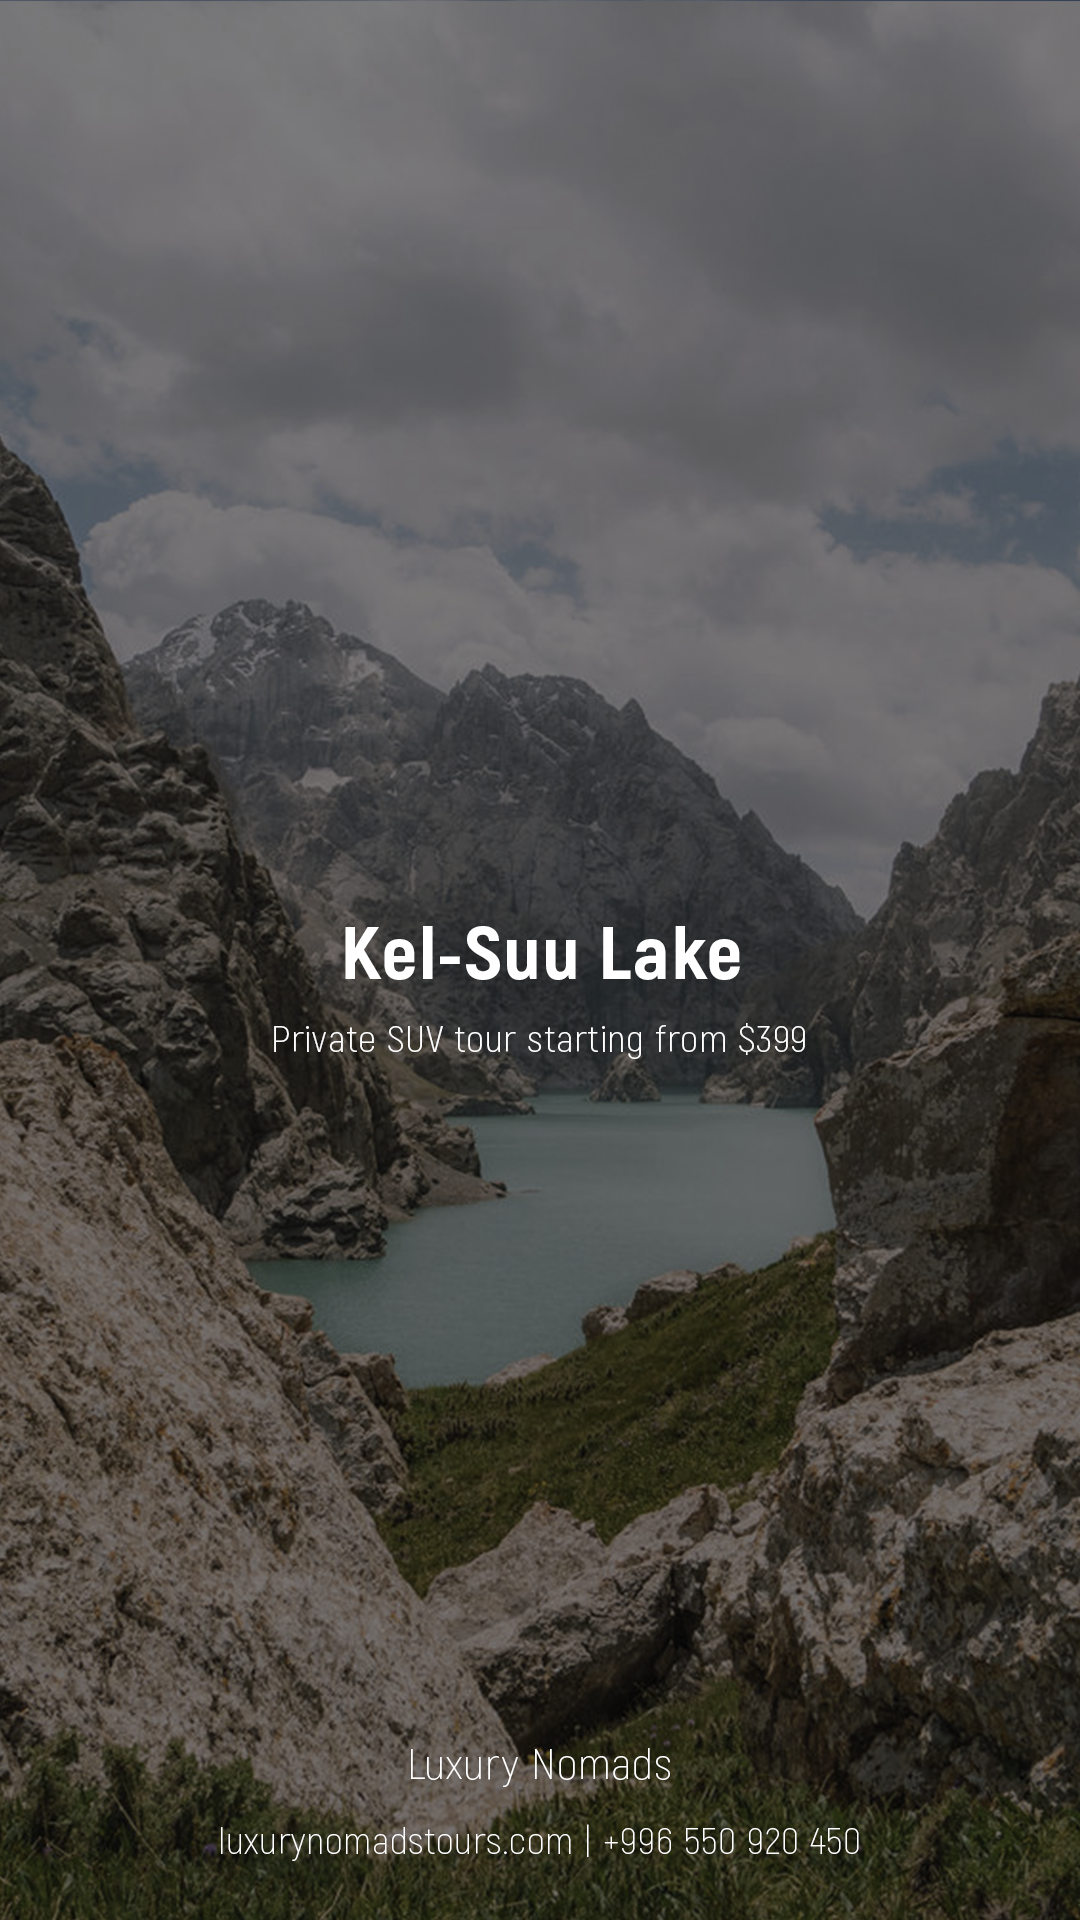 Kel-Suu Lake